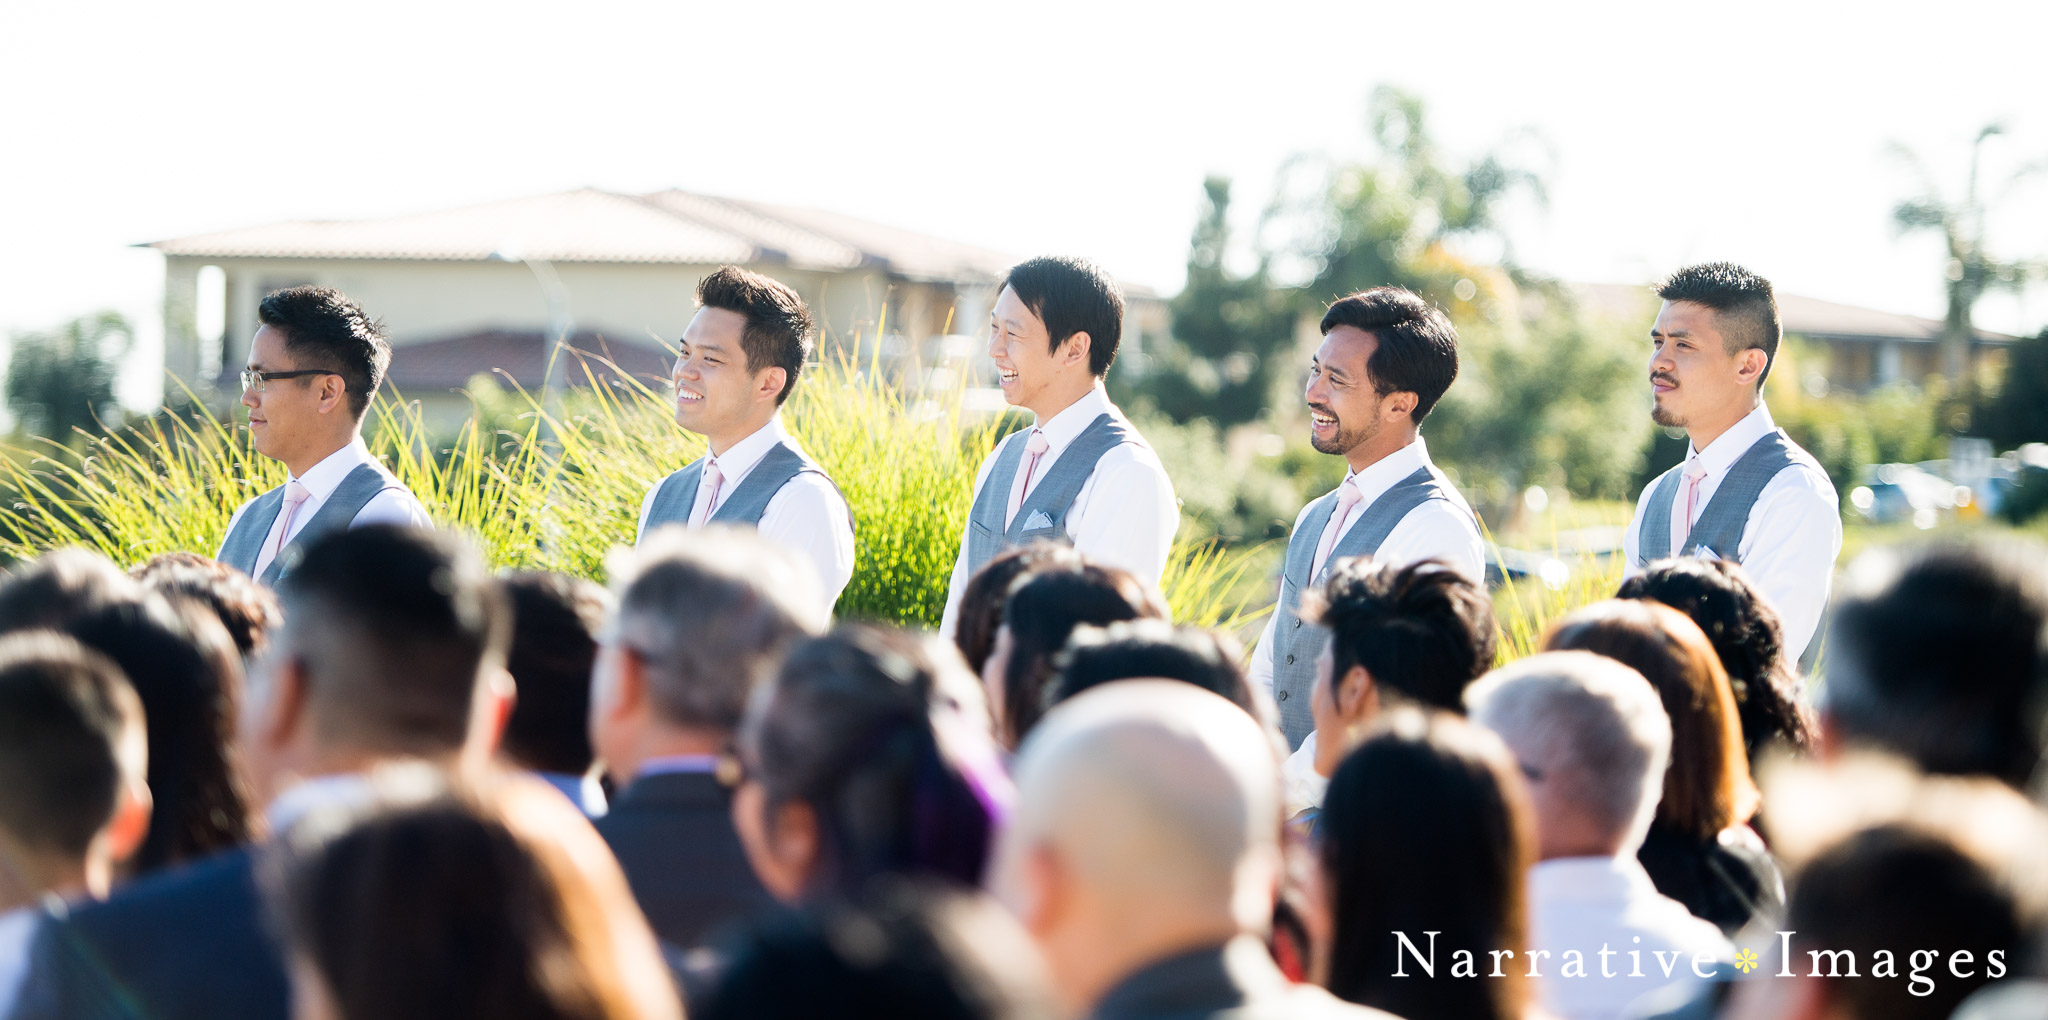 groomsmen watch couple get married at outdoor wedding venue